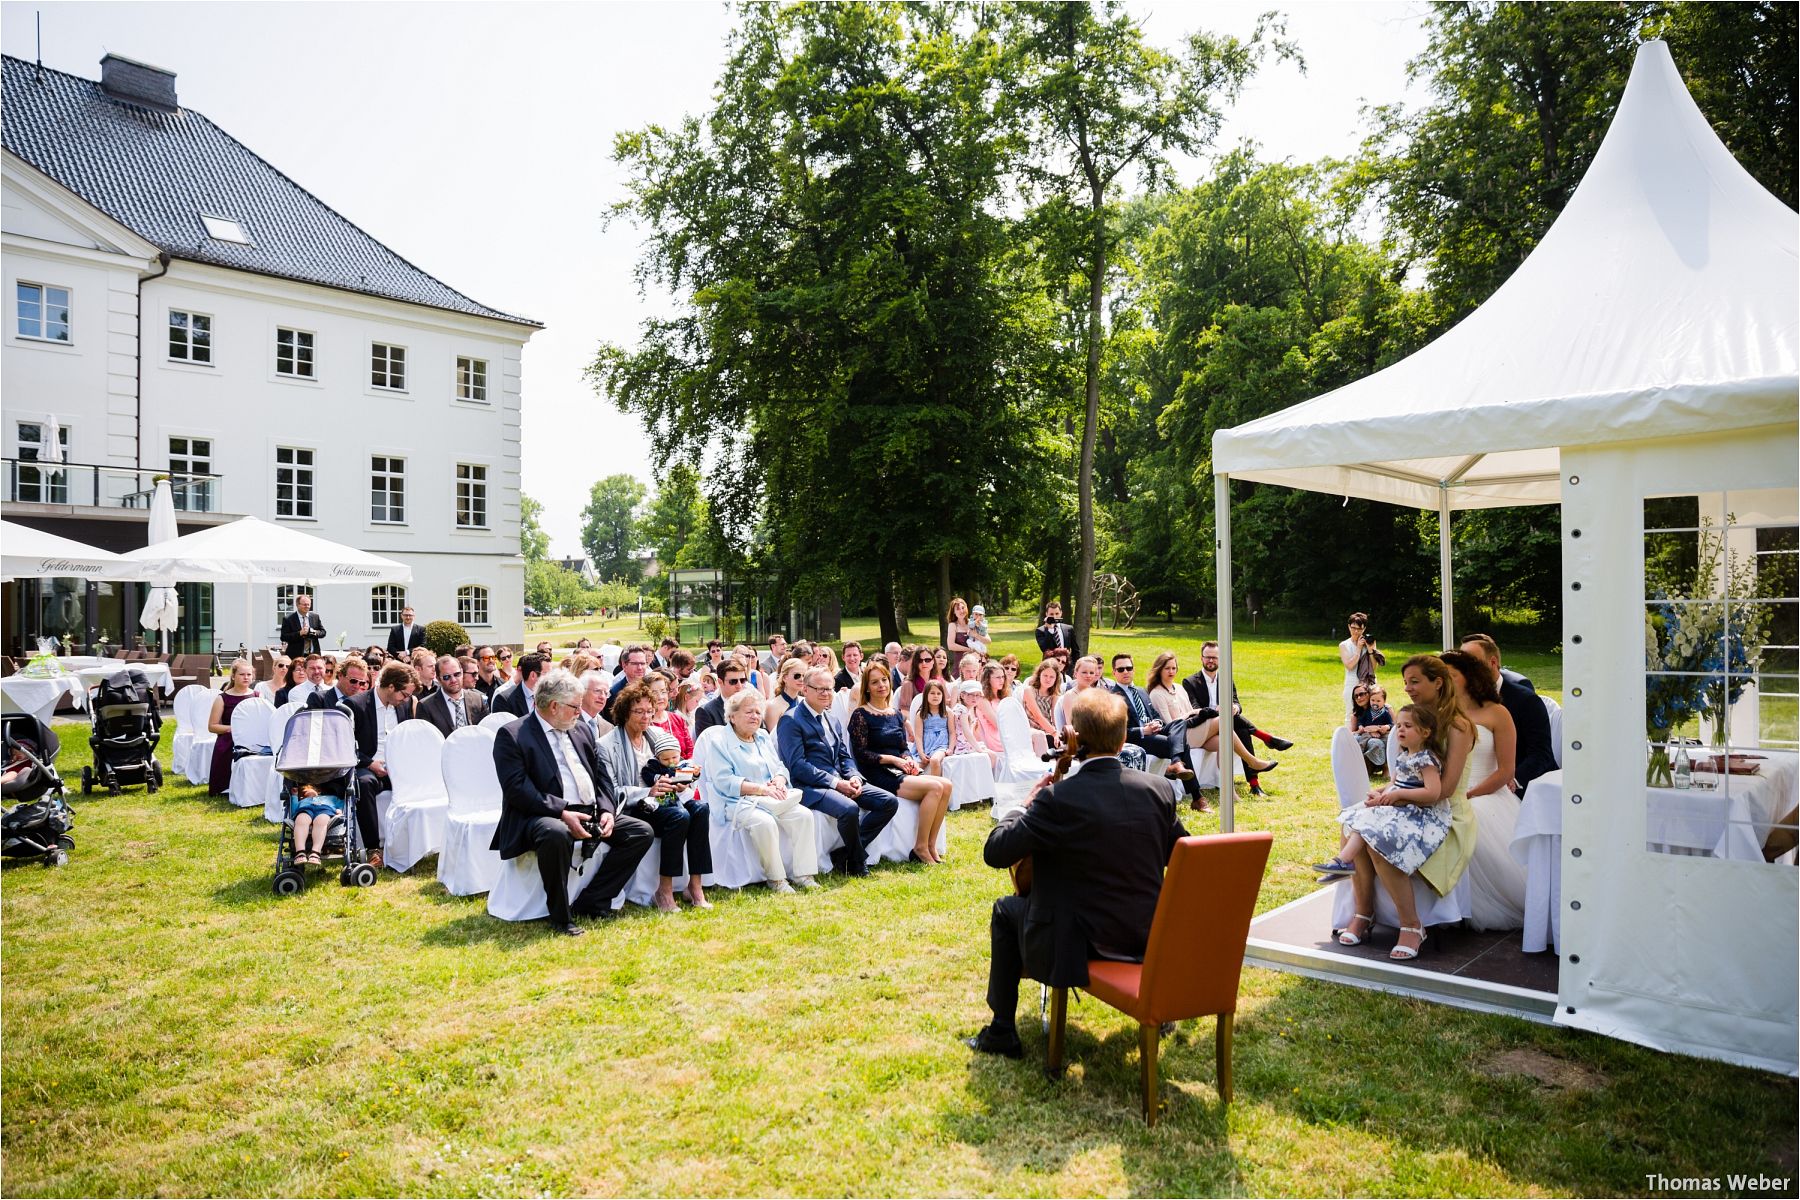 Hochzeitsfotograf Thomas Weber aus Oldenburg: Wunderschöne Hochzeit auf Schlossgut Groß Schwansee an der Ostsee